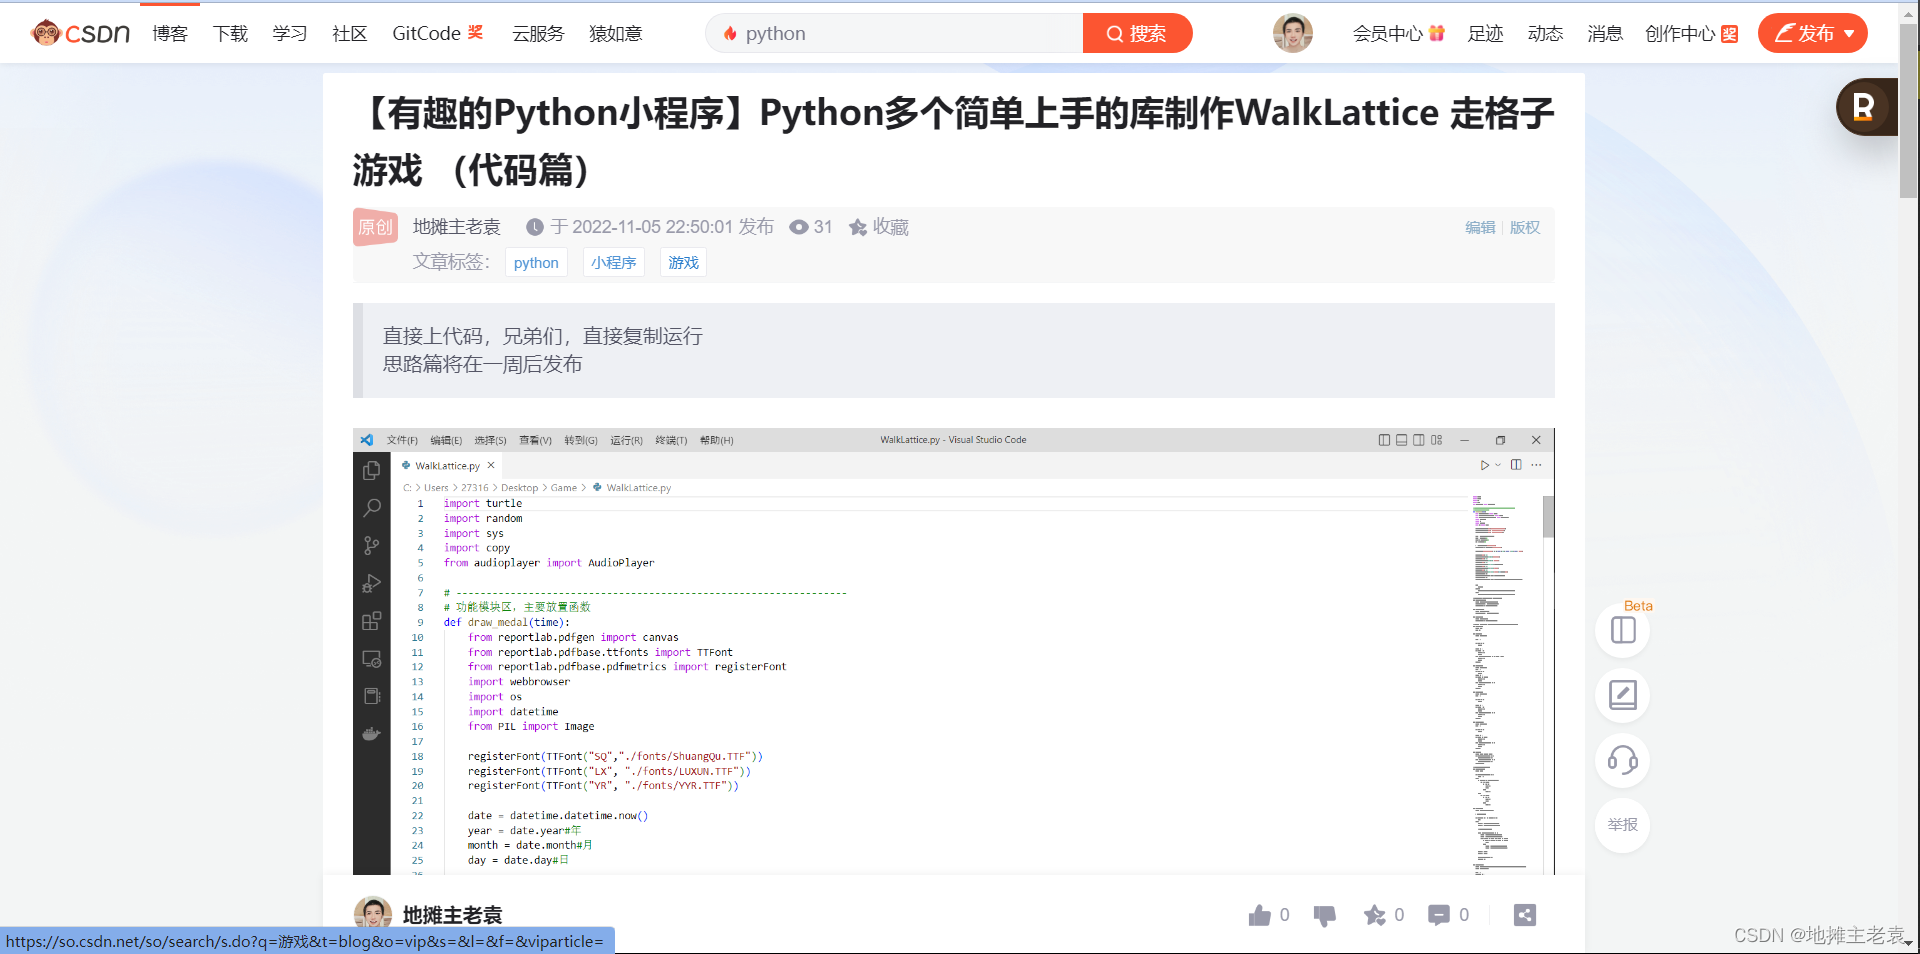 【有趣的Python小程序】Python多个简单上手的库制作WalkLattice 走格子游戏 （思路篇）下